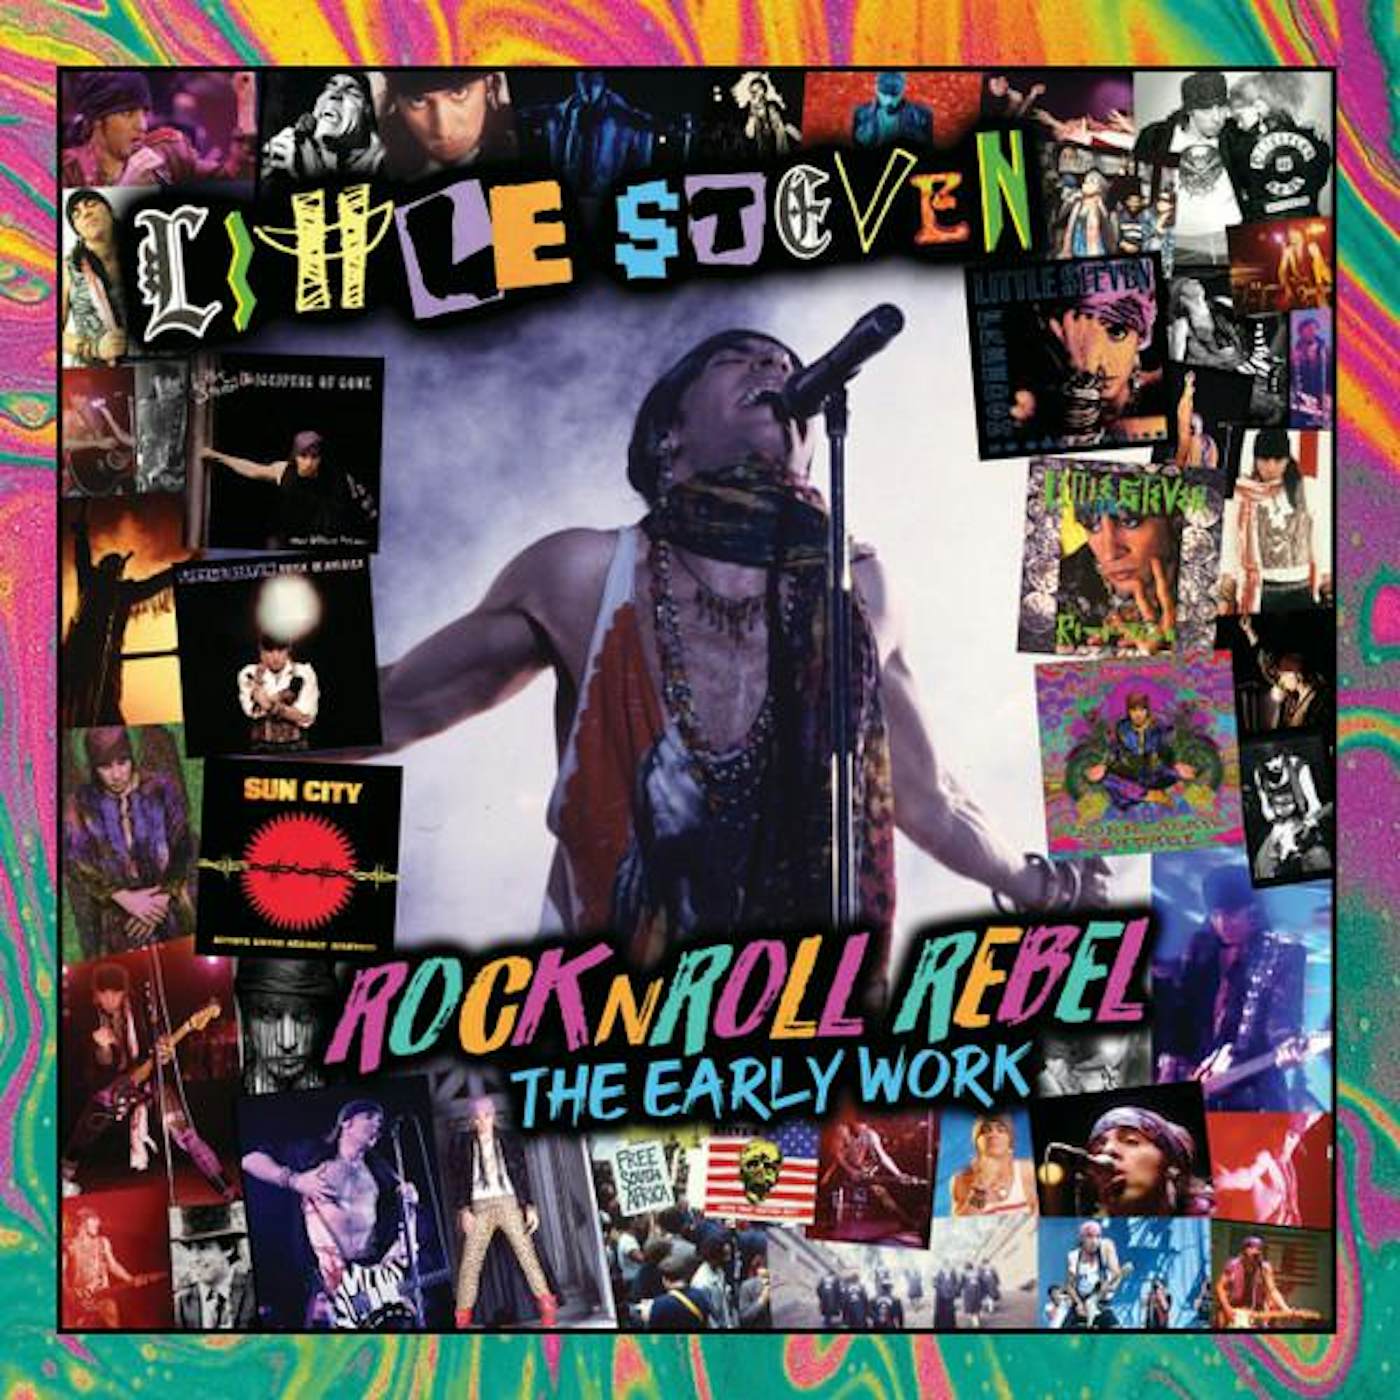 Little Steven ROCK N ROLL REBEL: THE EARLY WORK Vinyl Record